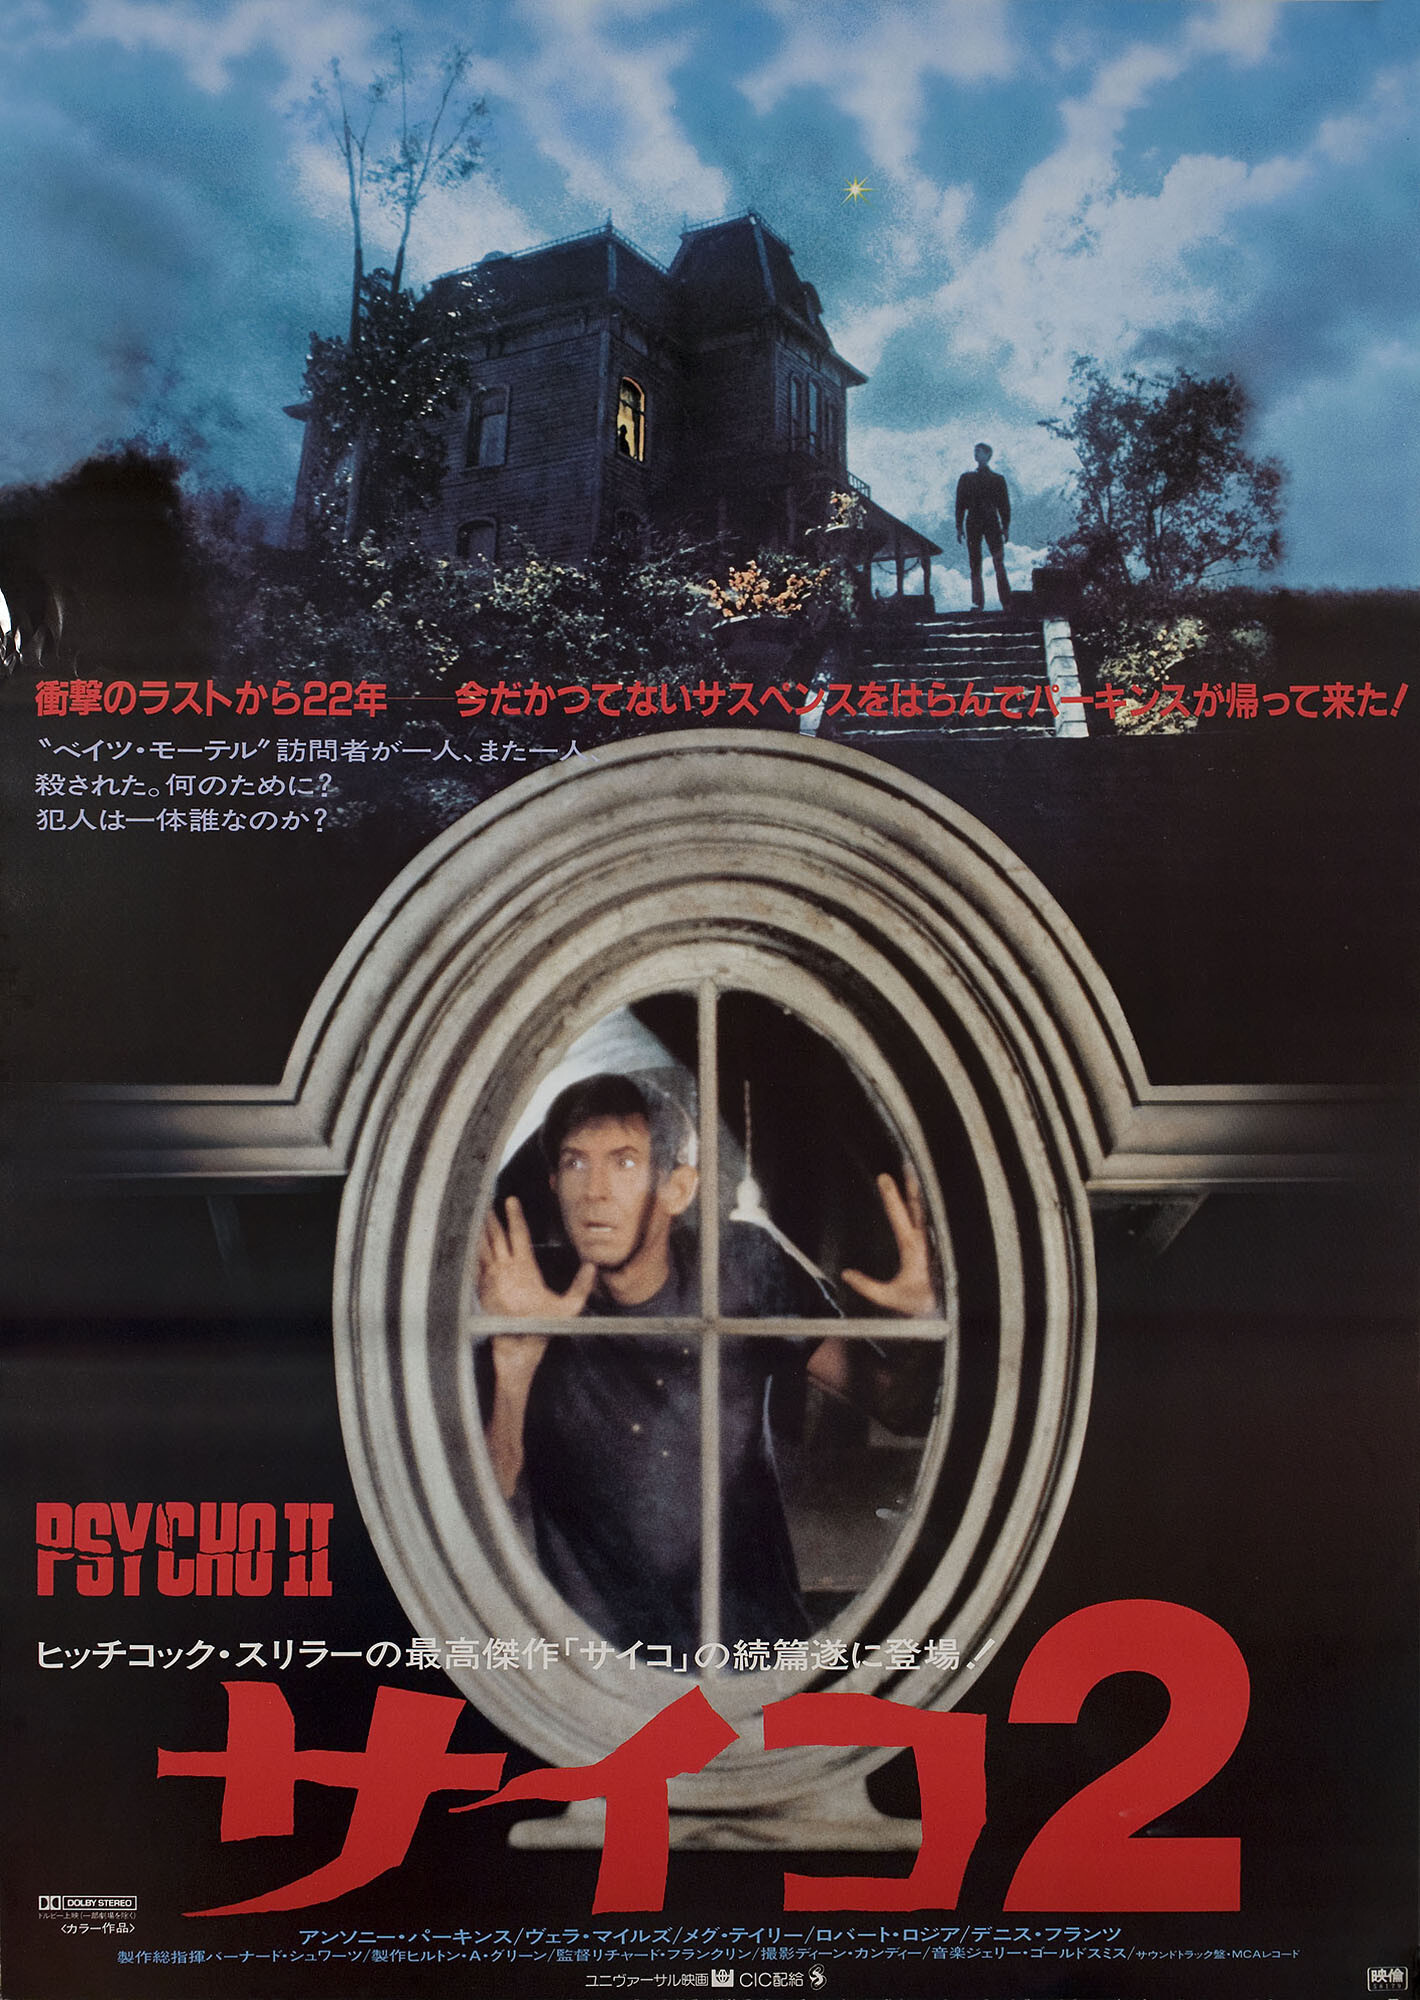 Психо 2 (Psycho II, 1983), режиссёр Ричард Франклин, японский постер к фильму (ужасы, 1983 год)